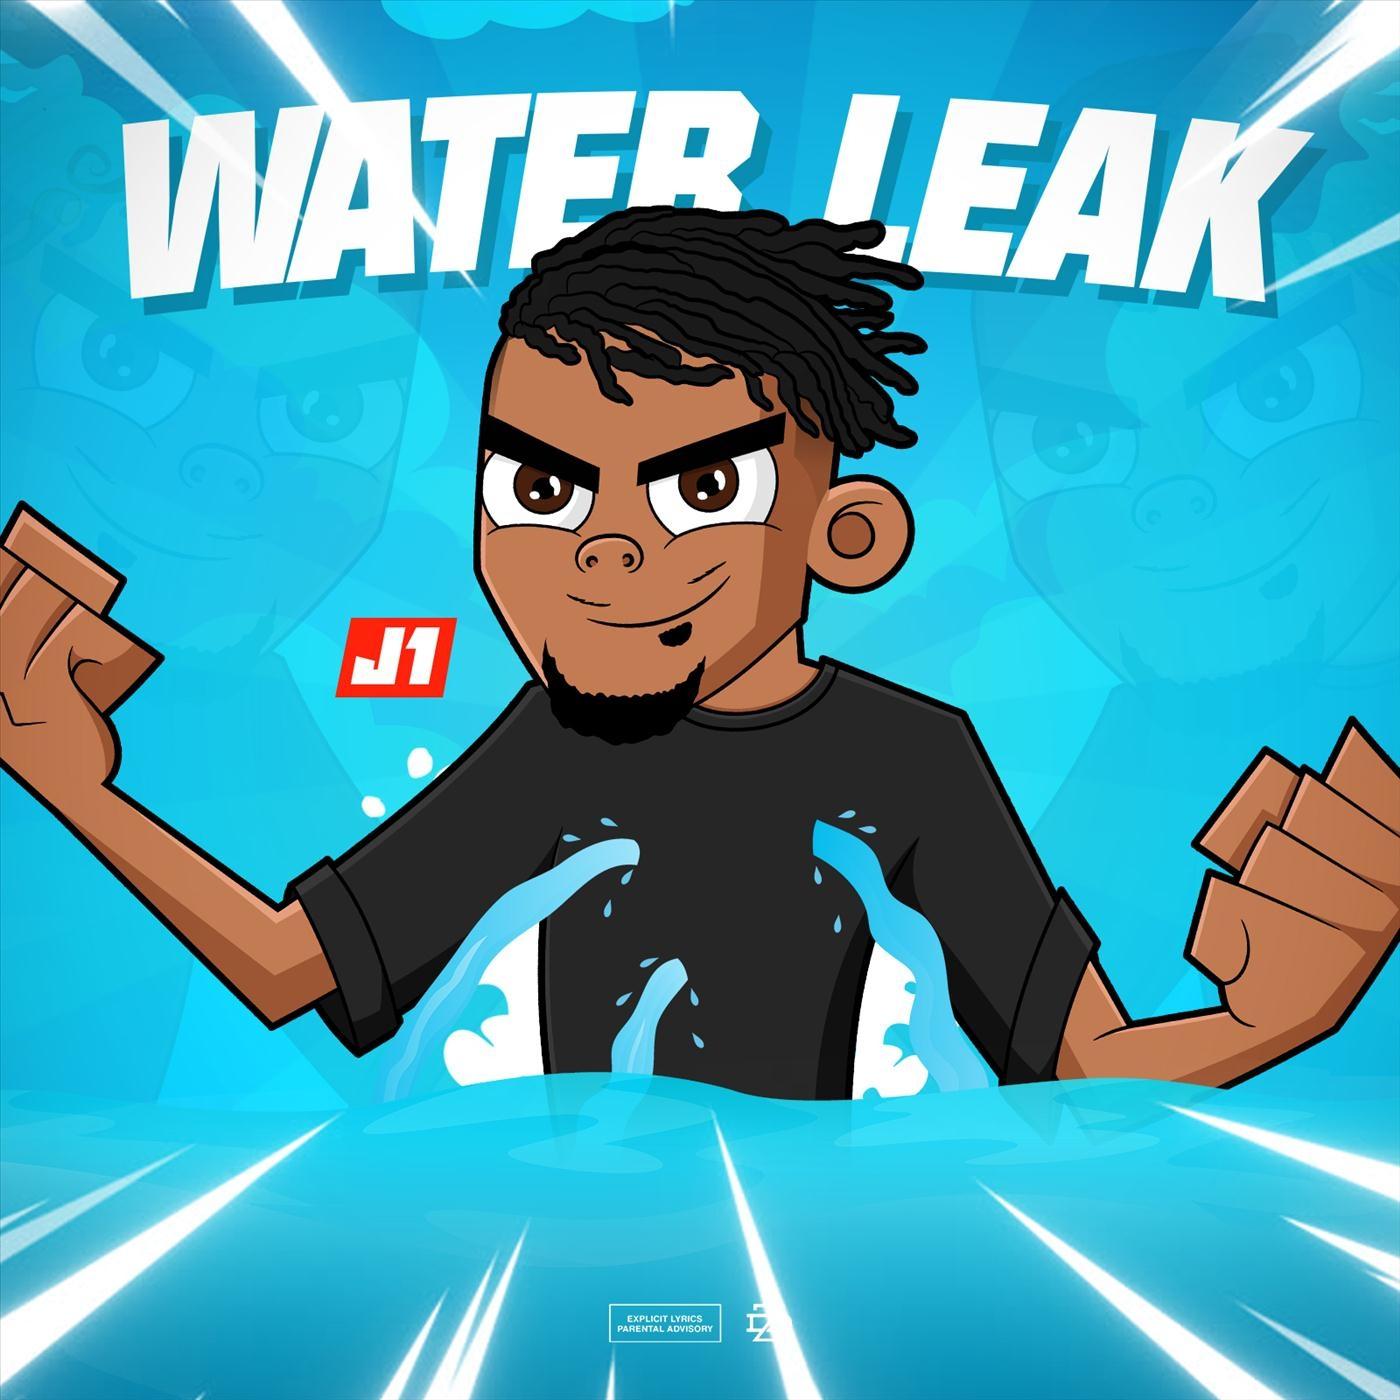 Water Leak